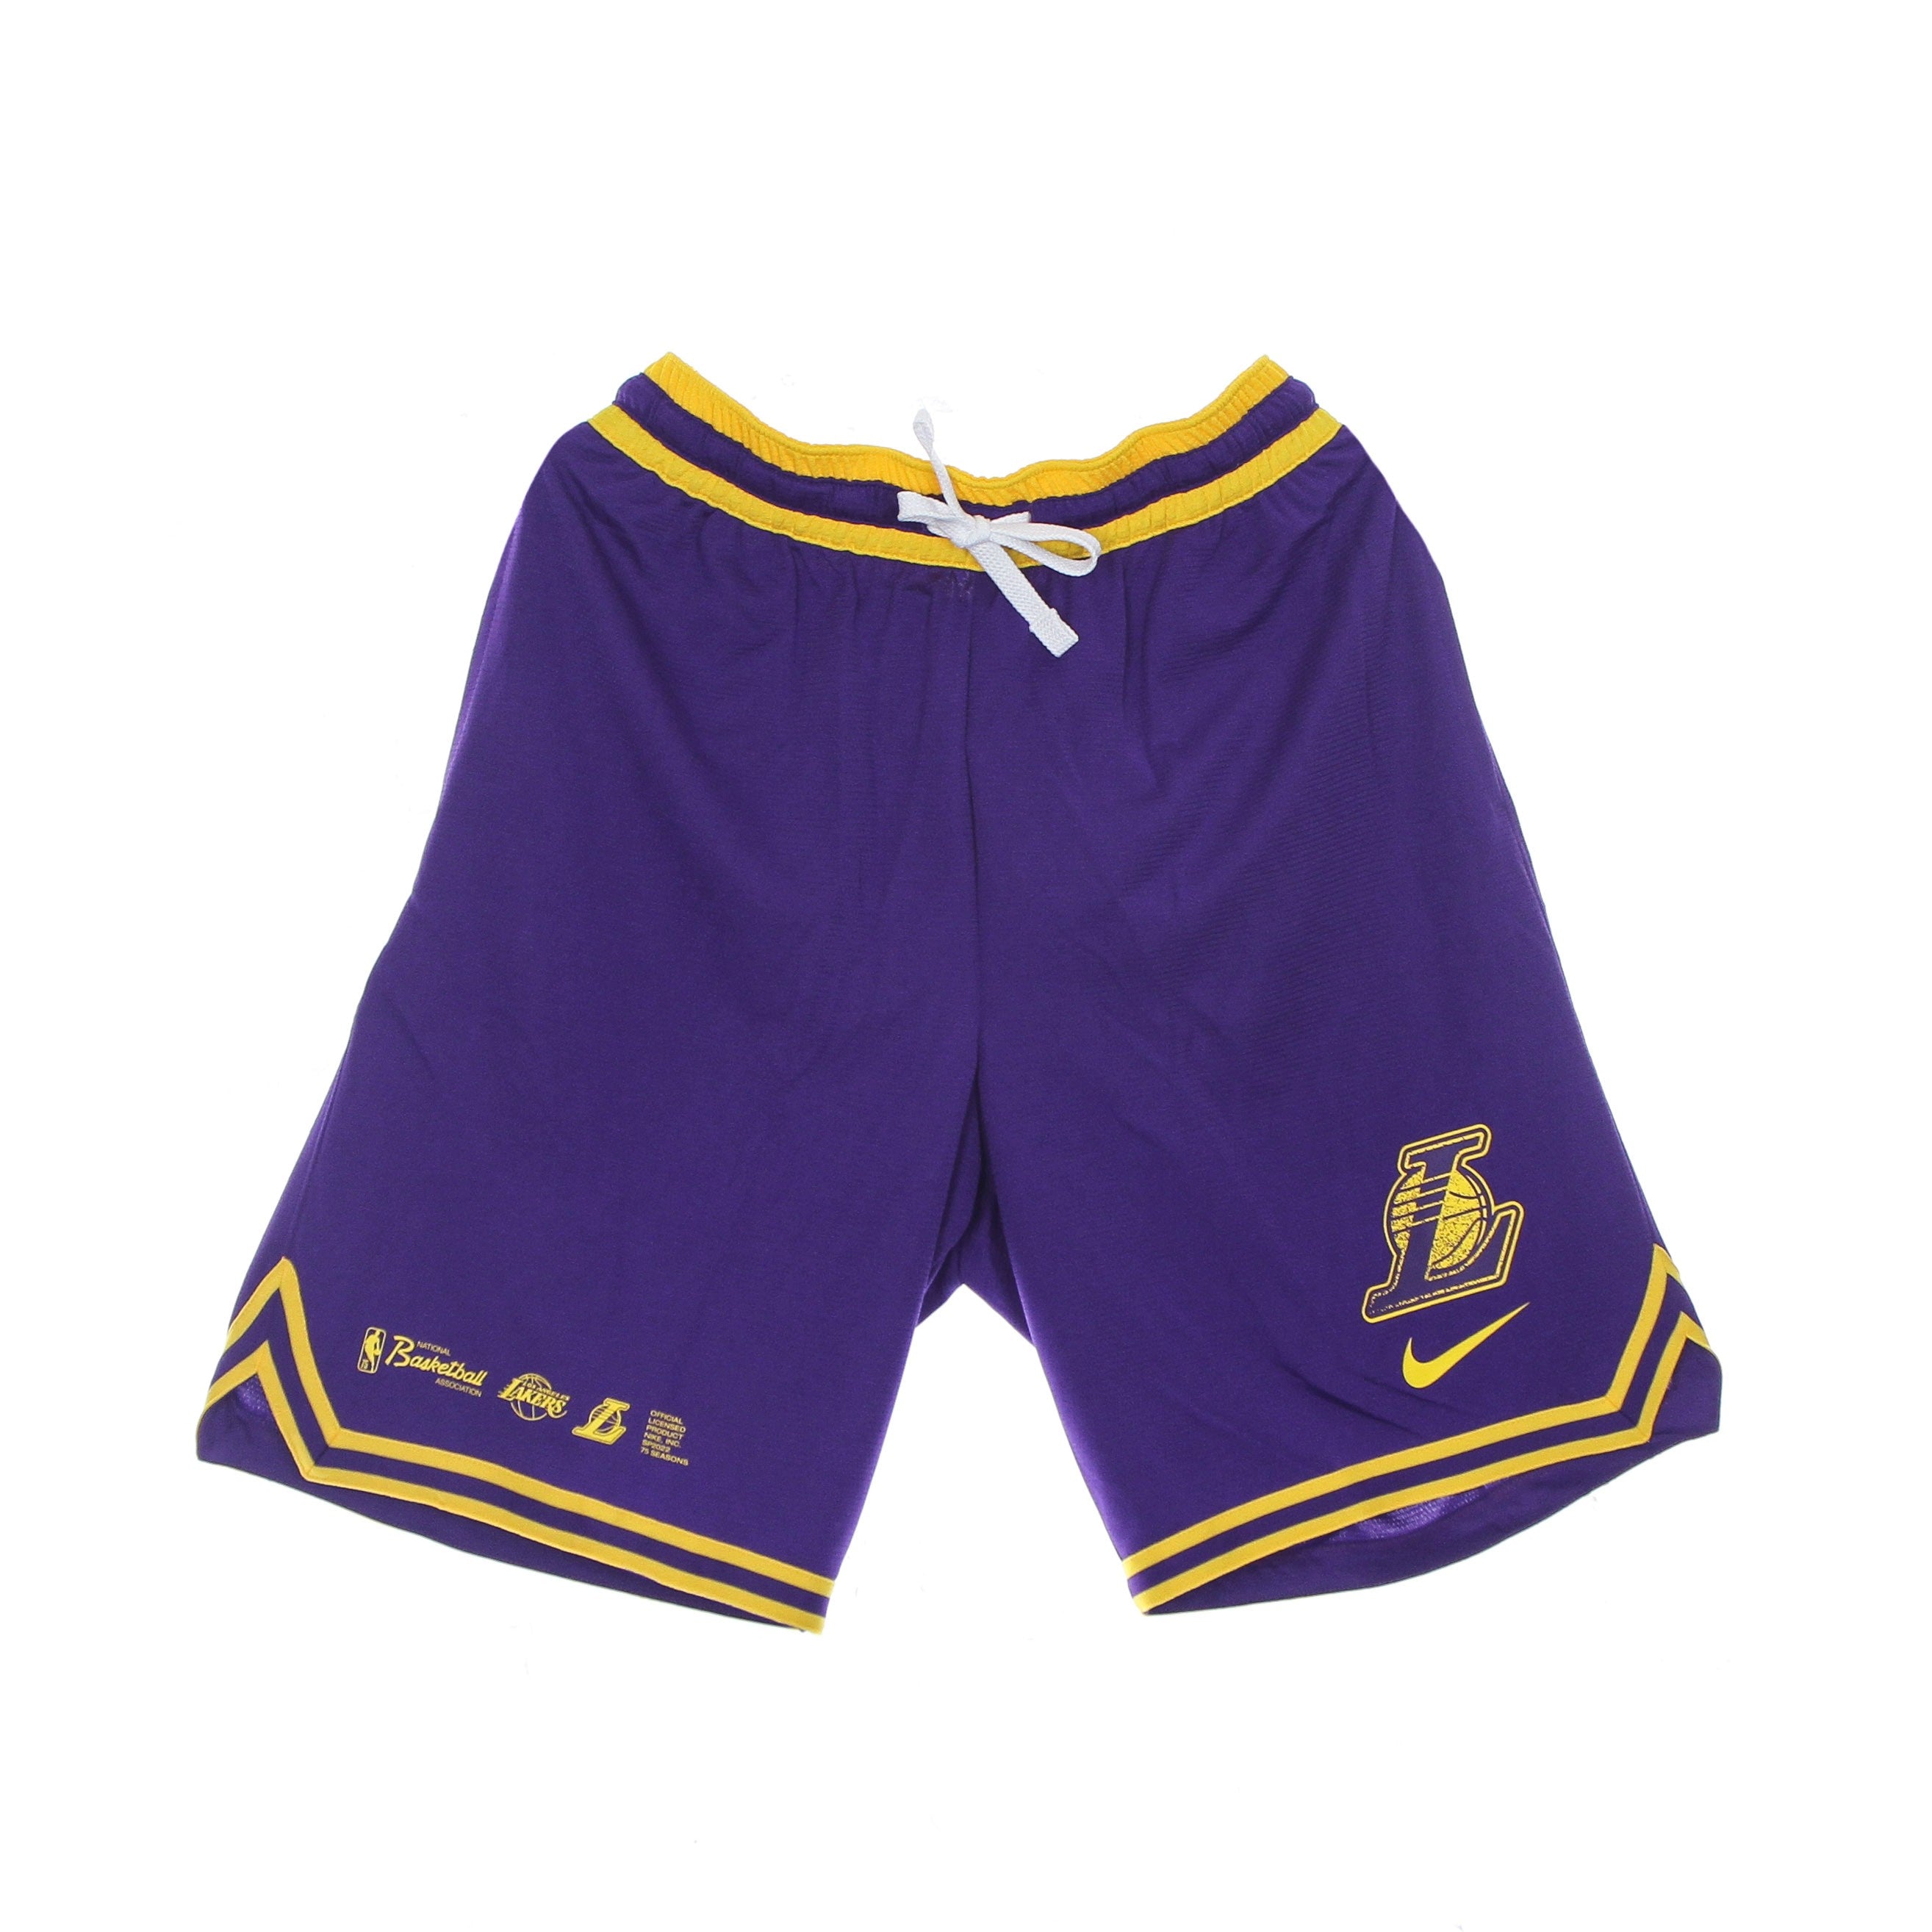 Pantaloncino Tipo Basket Uomo Nba Dri Fit Dna Short Loslak Field Purple/amarillo